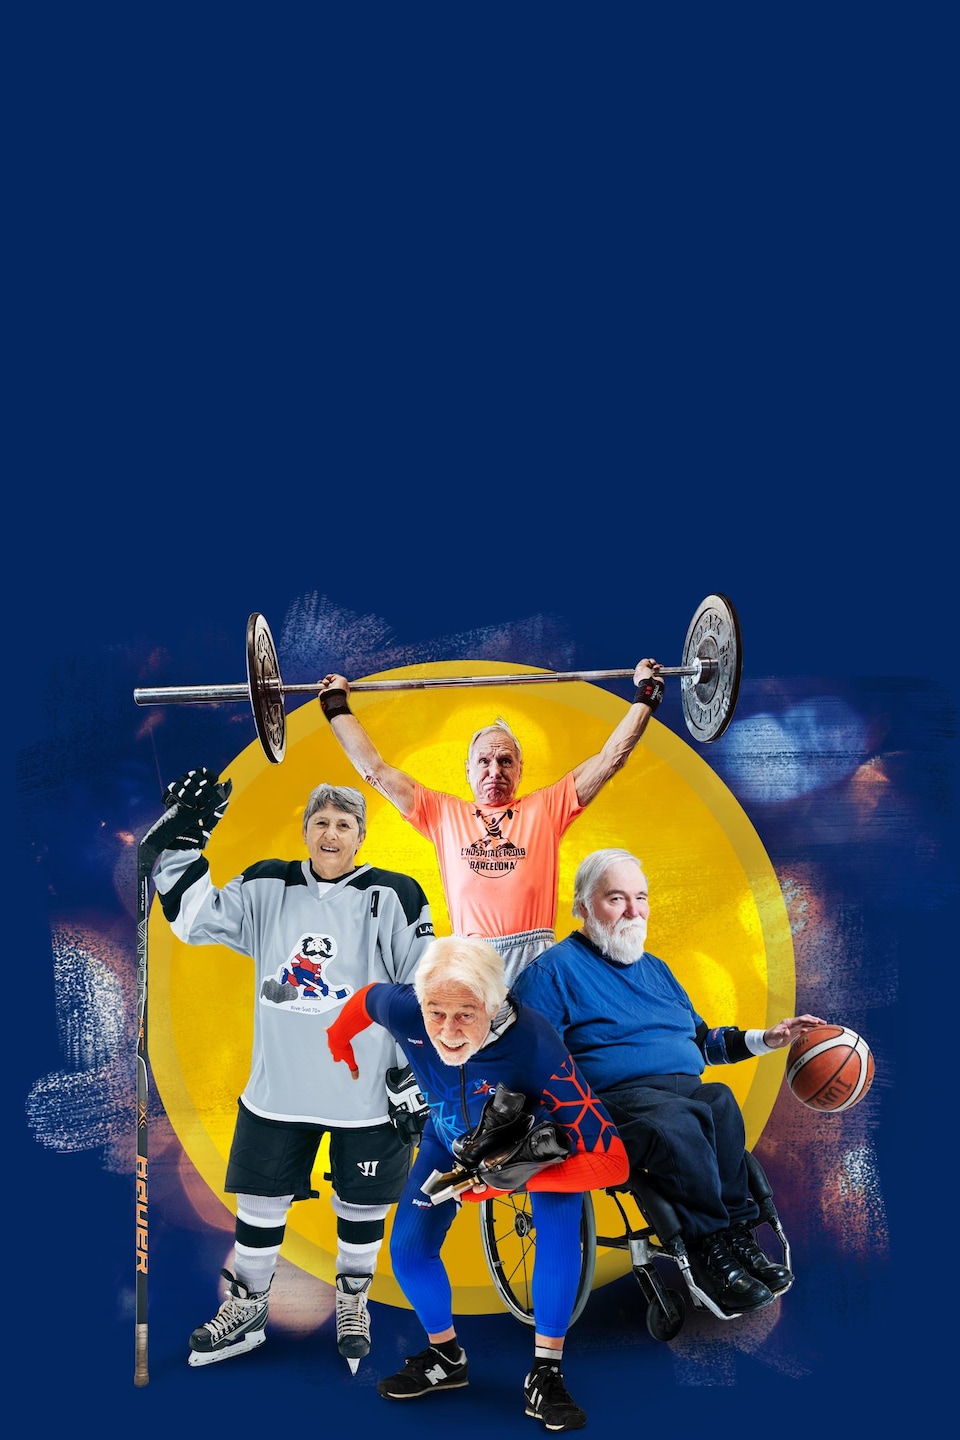 Une hockeyeuse, un haltérophile, un patineur de vitesse et un basketteur en fauteuil roulant regardent la caméra en souriant.